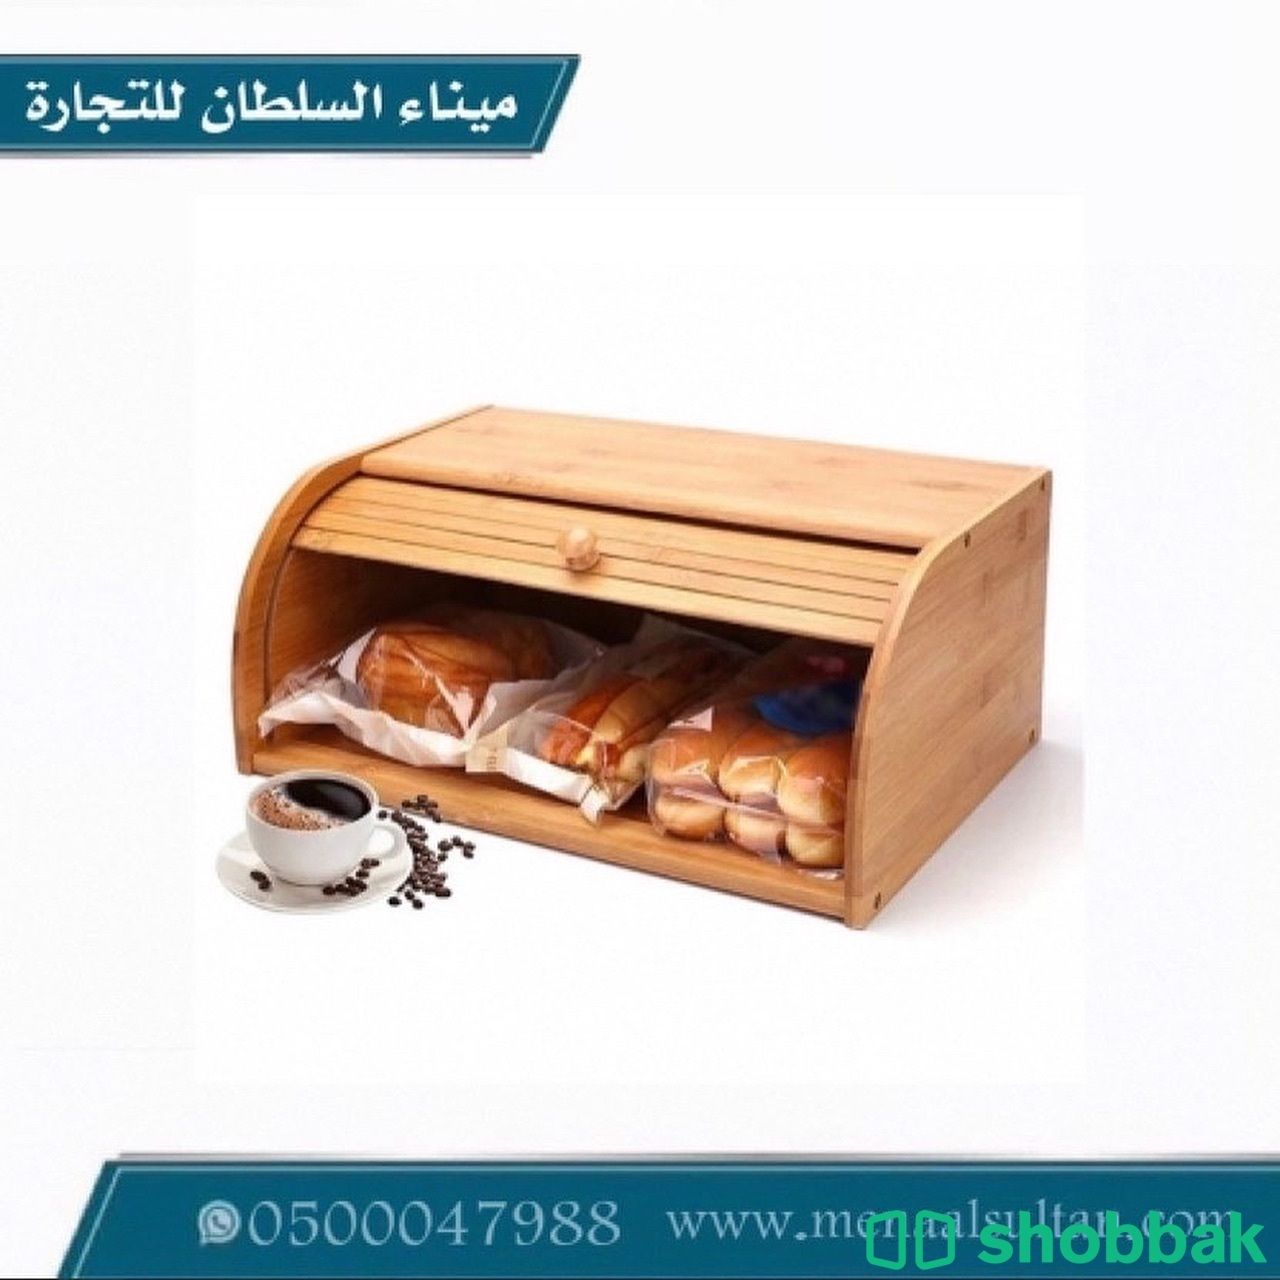 صحن تقديم سيراميك وخشب بغطاء   Shobbak Saudi Arabia